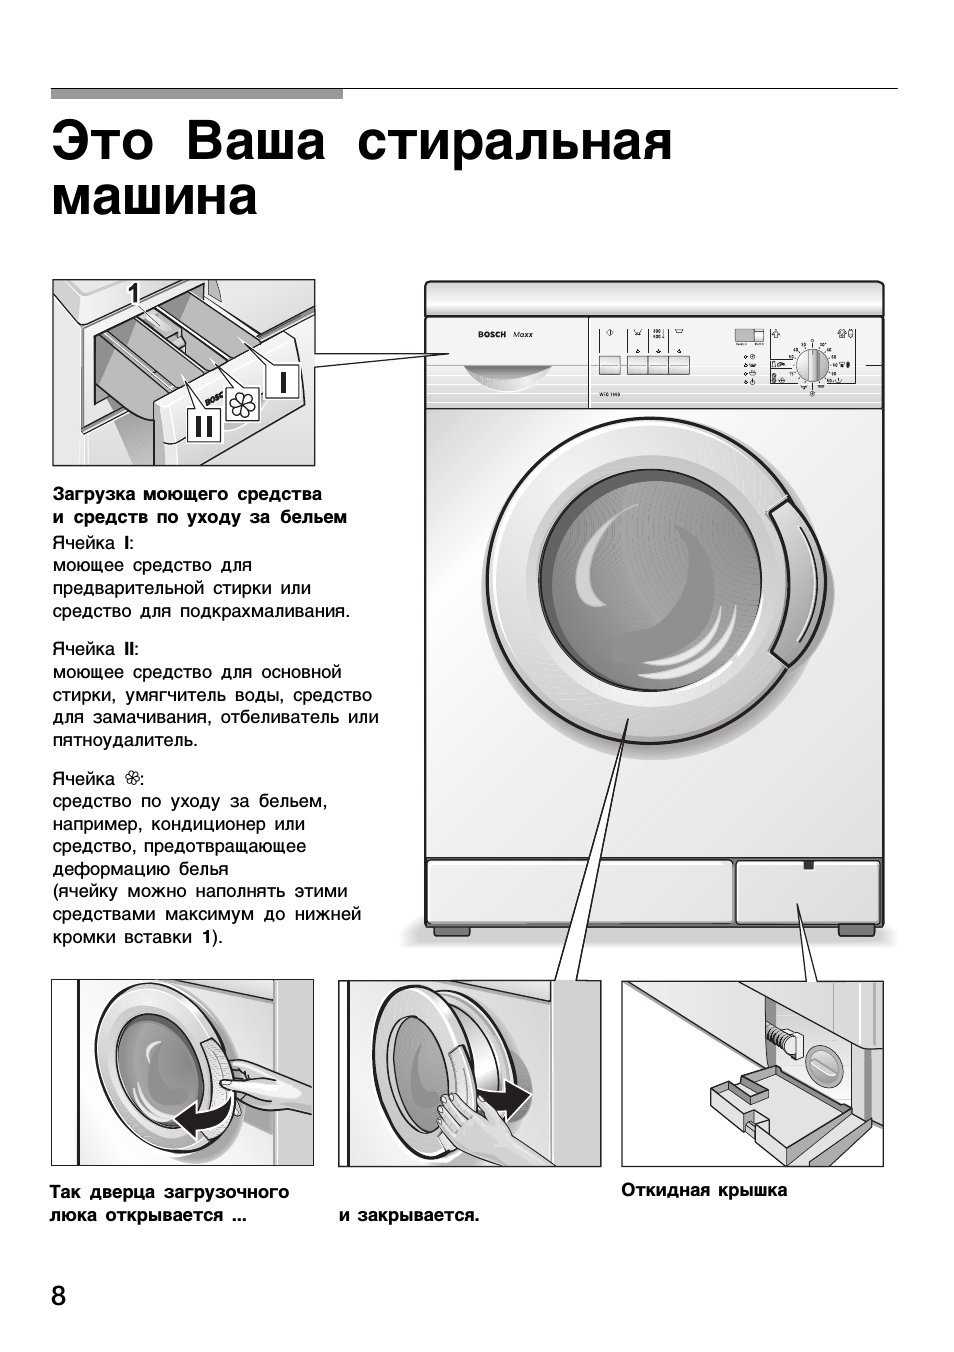 Как разблокировать стиральную машинку samsung?